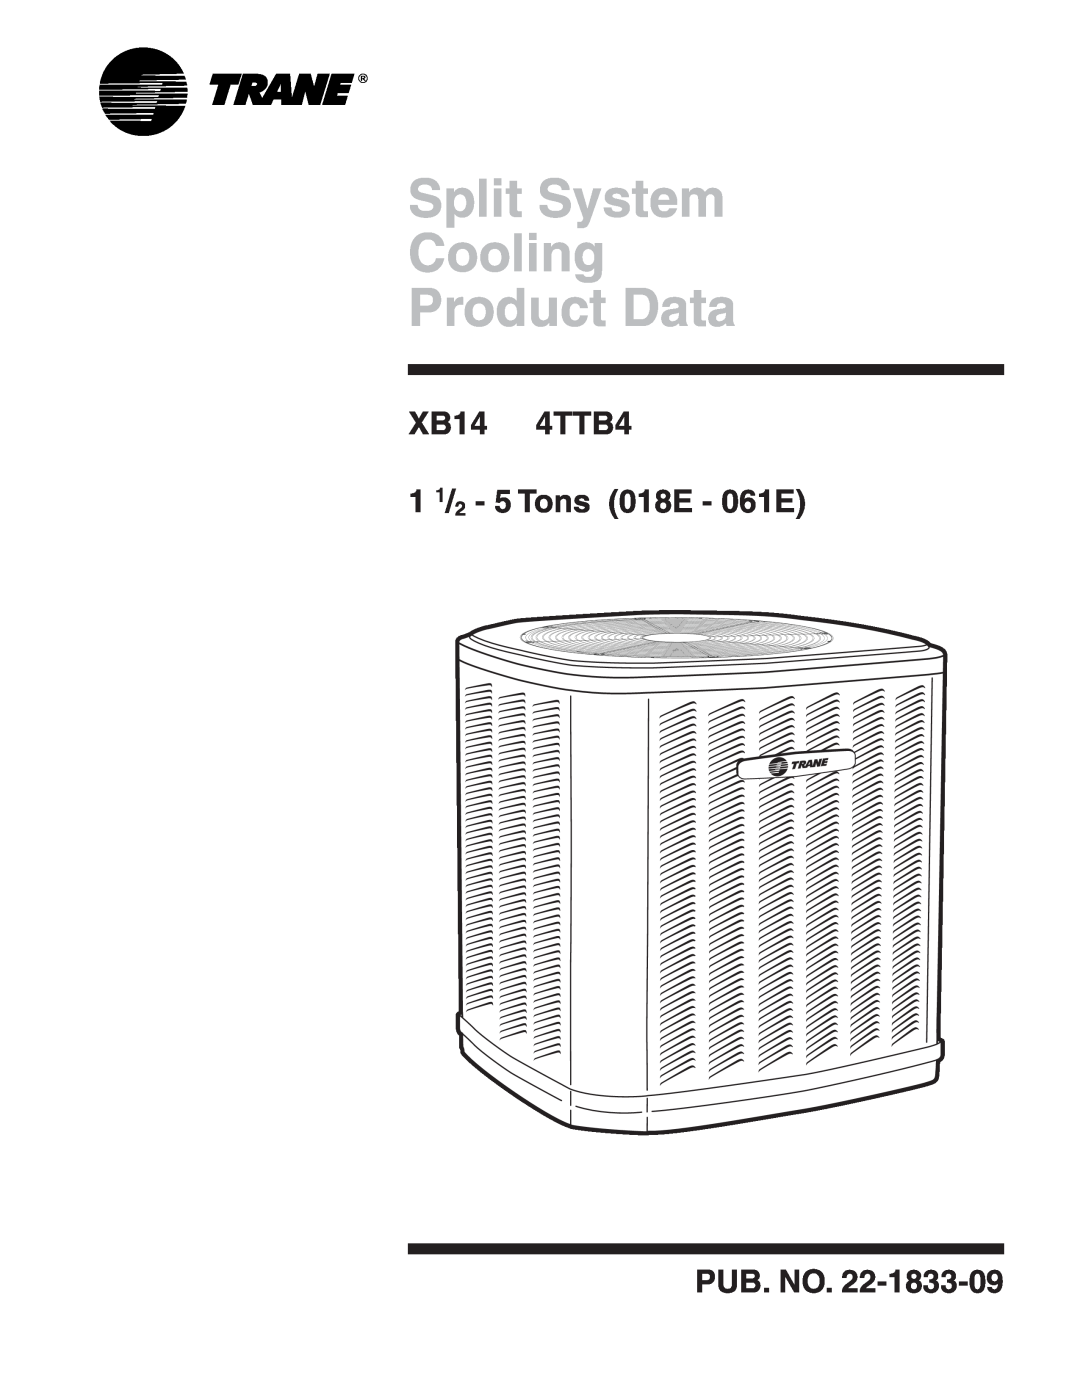 Trane manual Split System Cooling Product Data, XB14 4TTB4 1 1/2 - 5 Tons 018E - 061E, Pub. No 